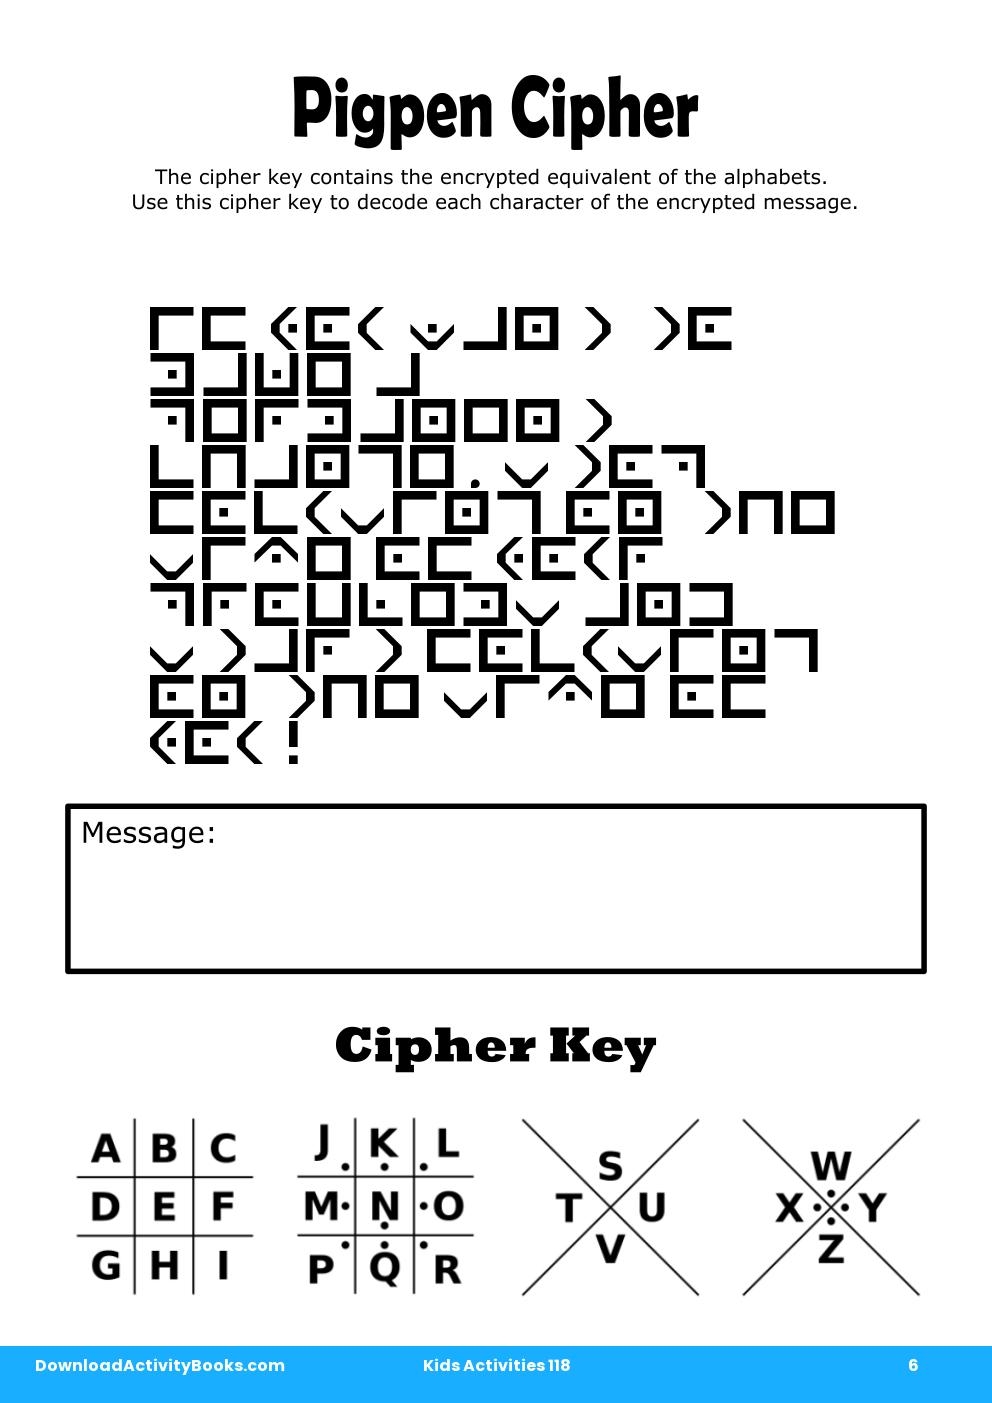 Pigpen Cipher in Kids Activities 118